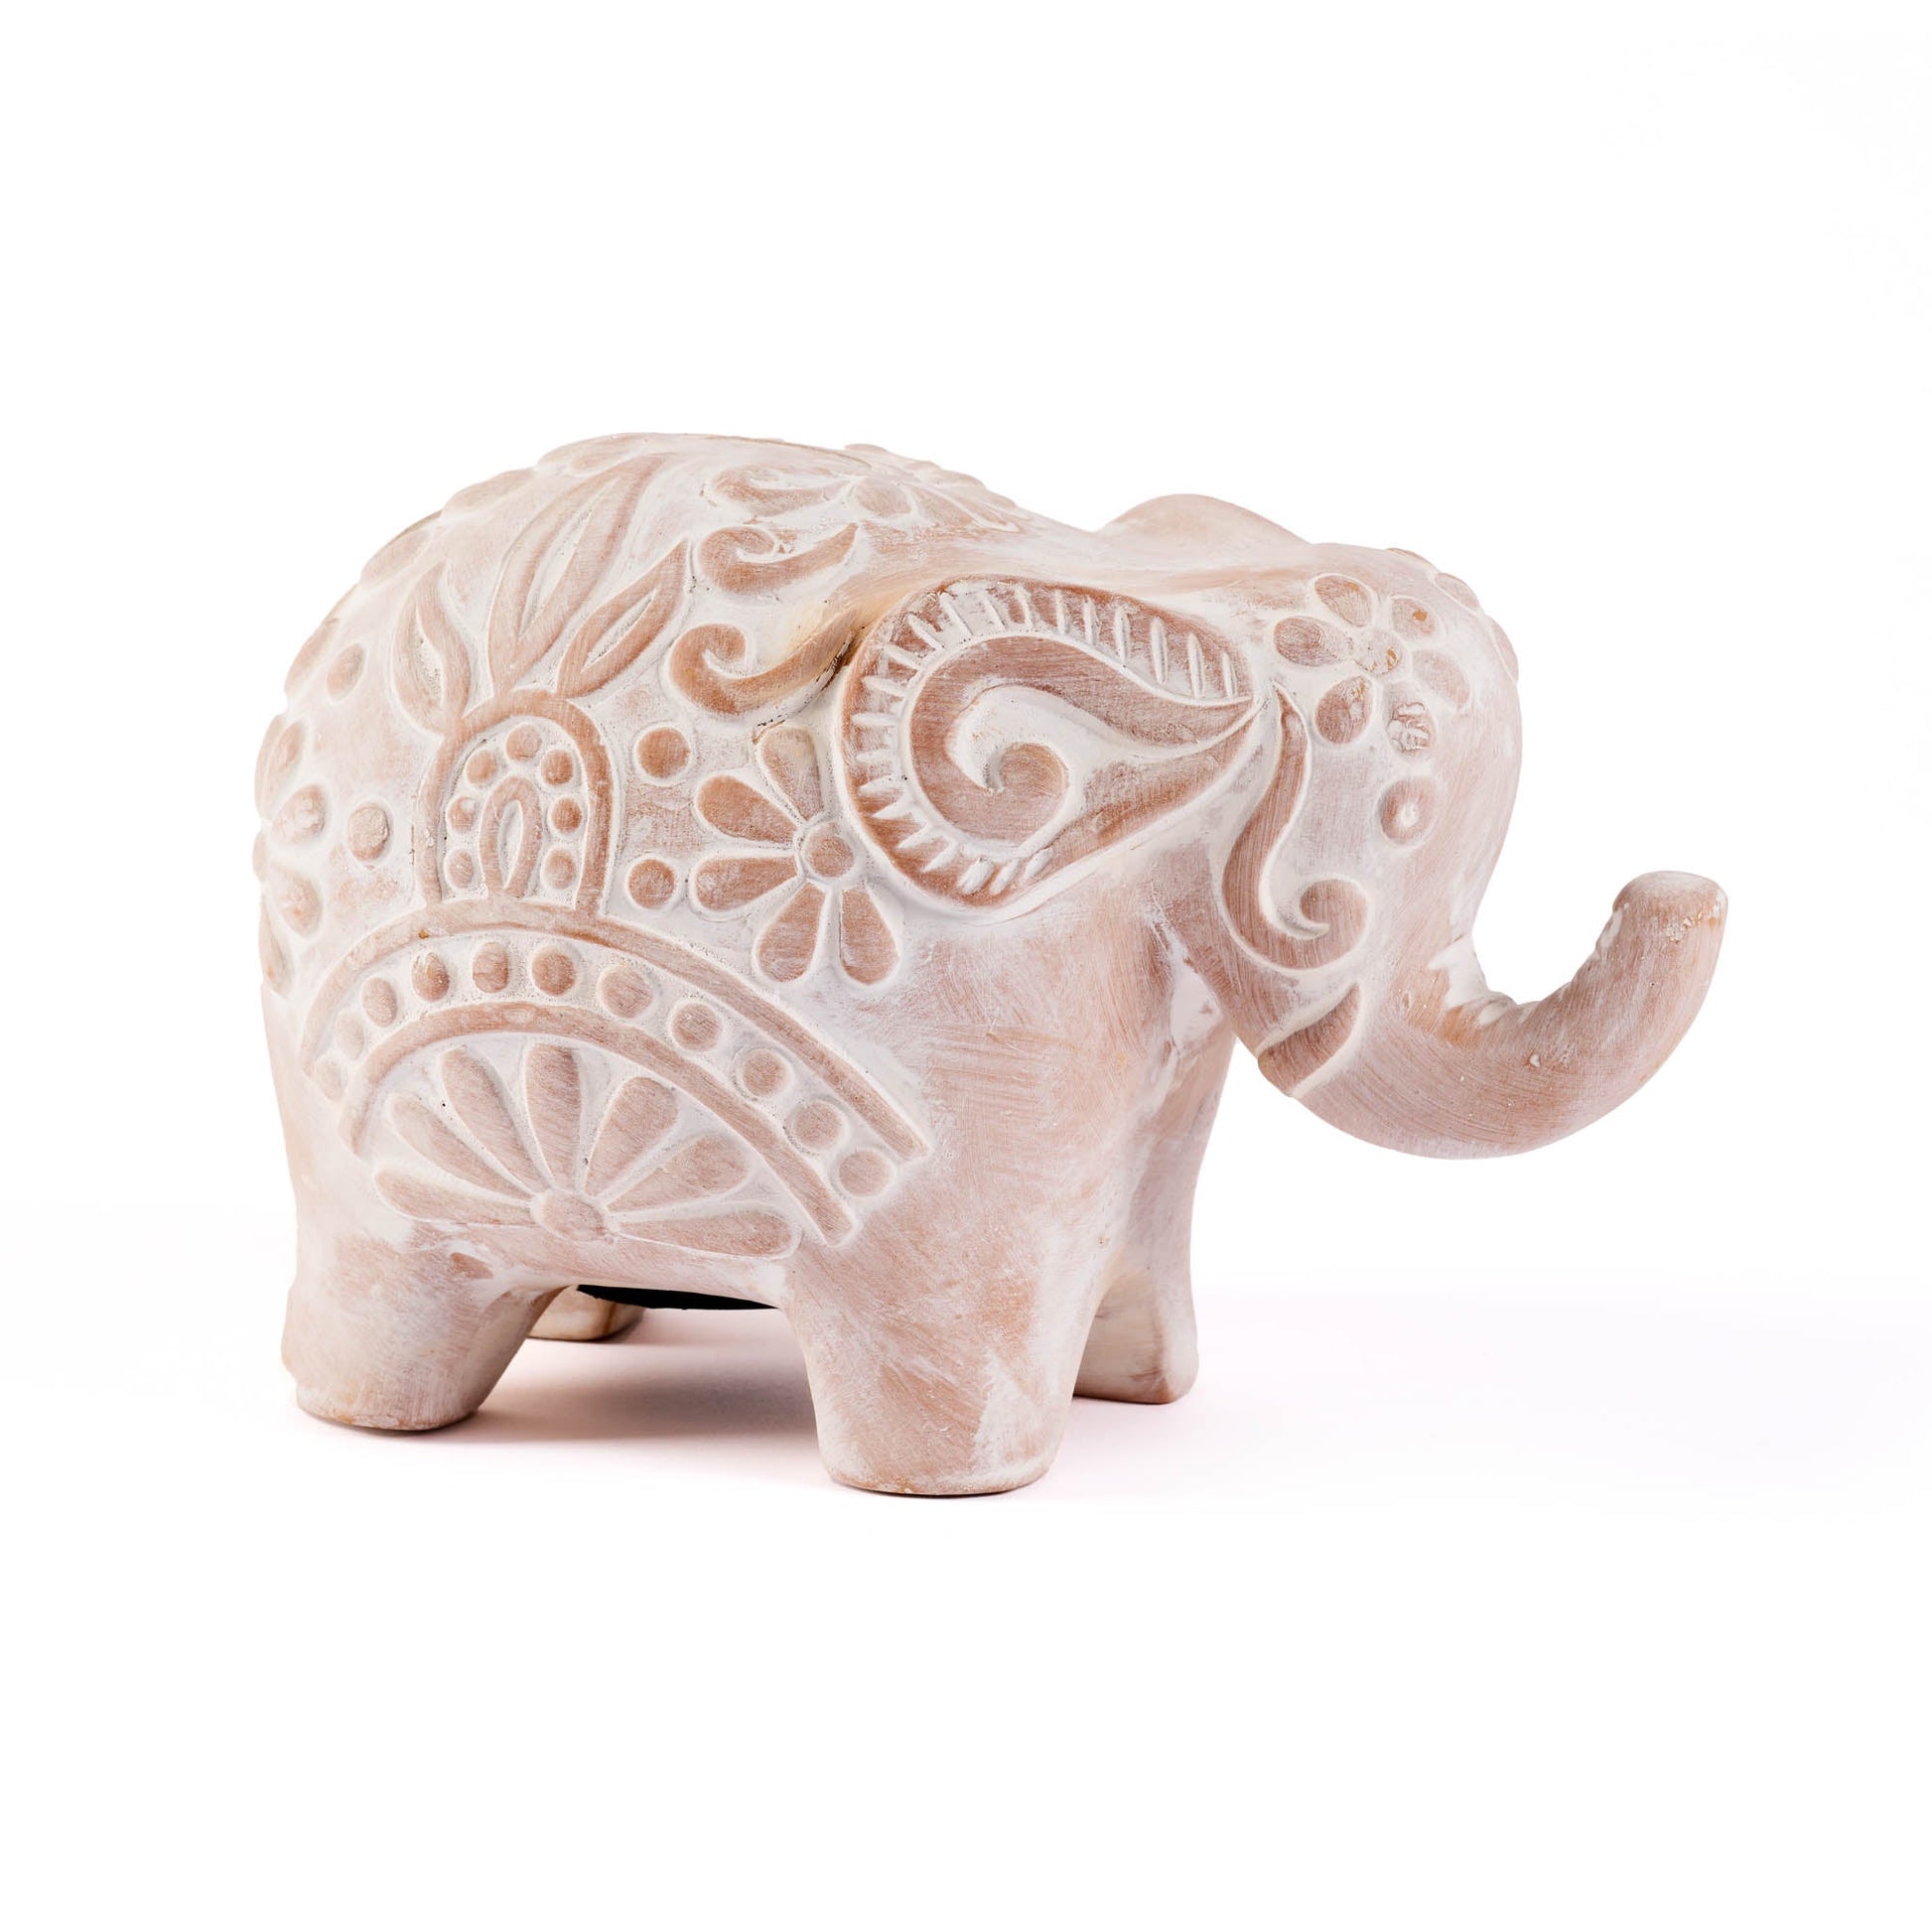 Salvadanaio Elefante terracotta – Altromercato Nonsolonoi